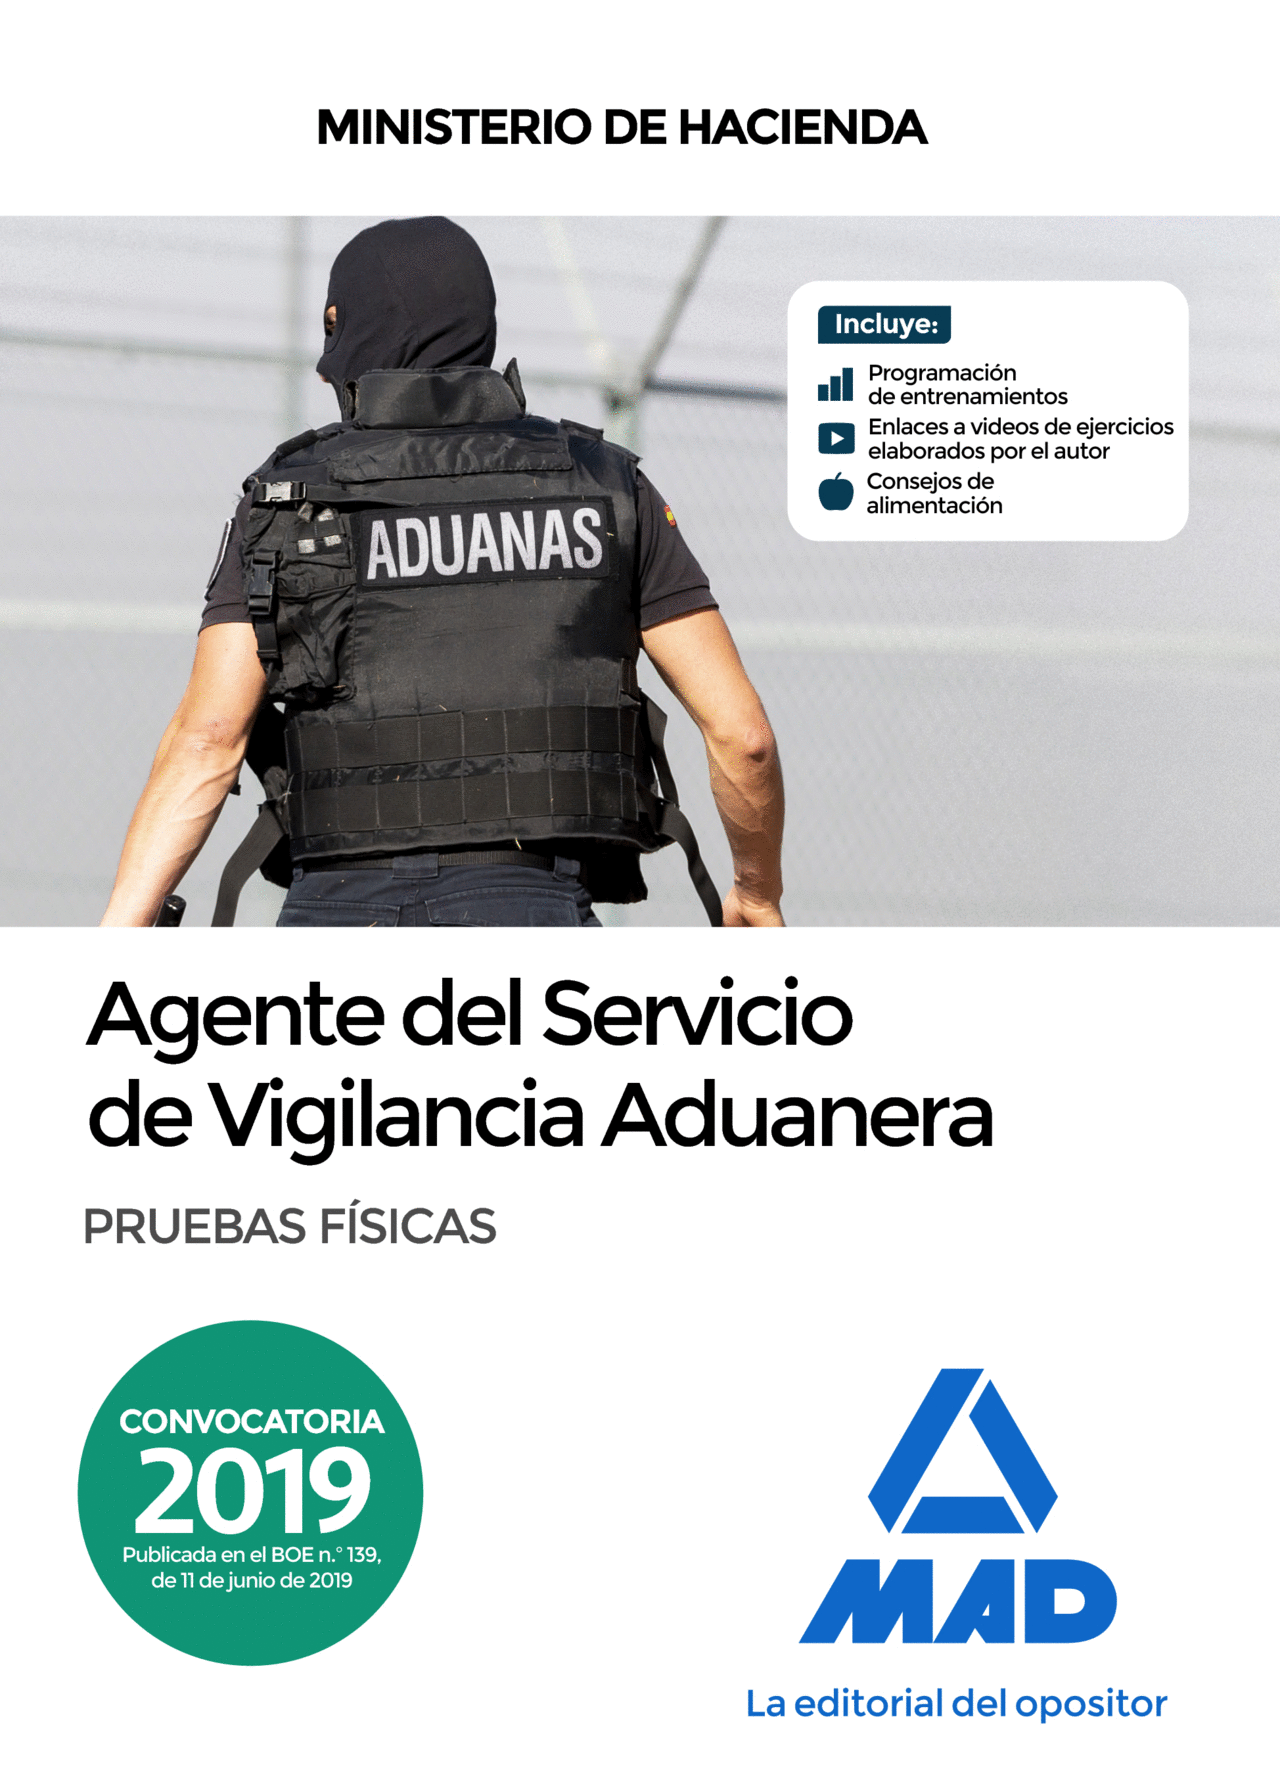 AGENTE DEL SERVICIO DE VIGILANCIA ADUANERA. PRUEBAS FISICAS.